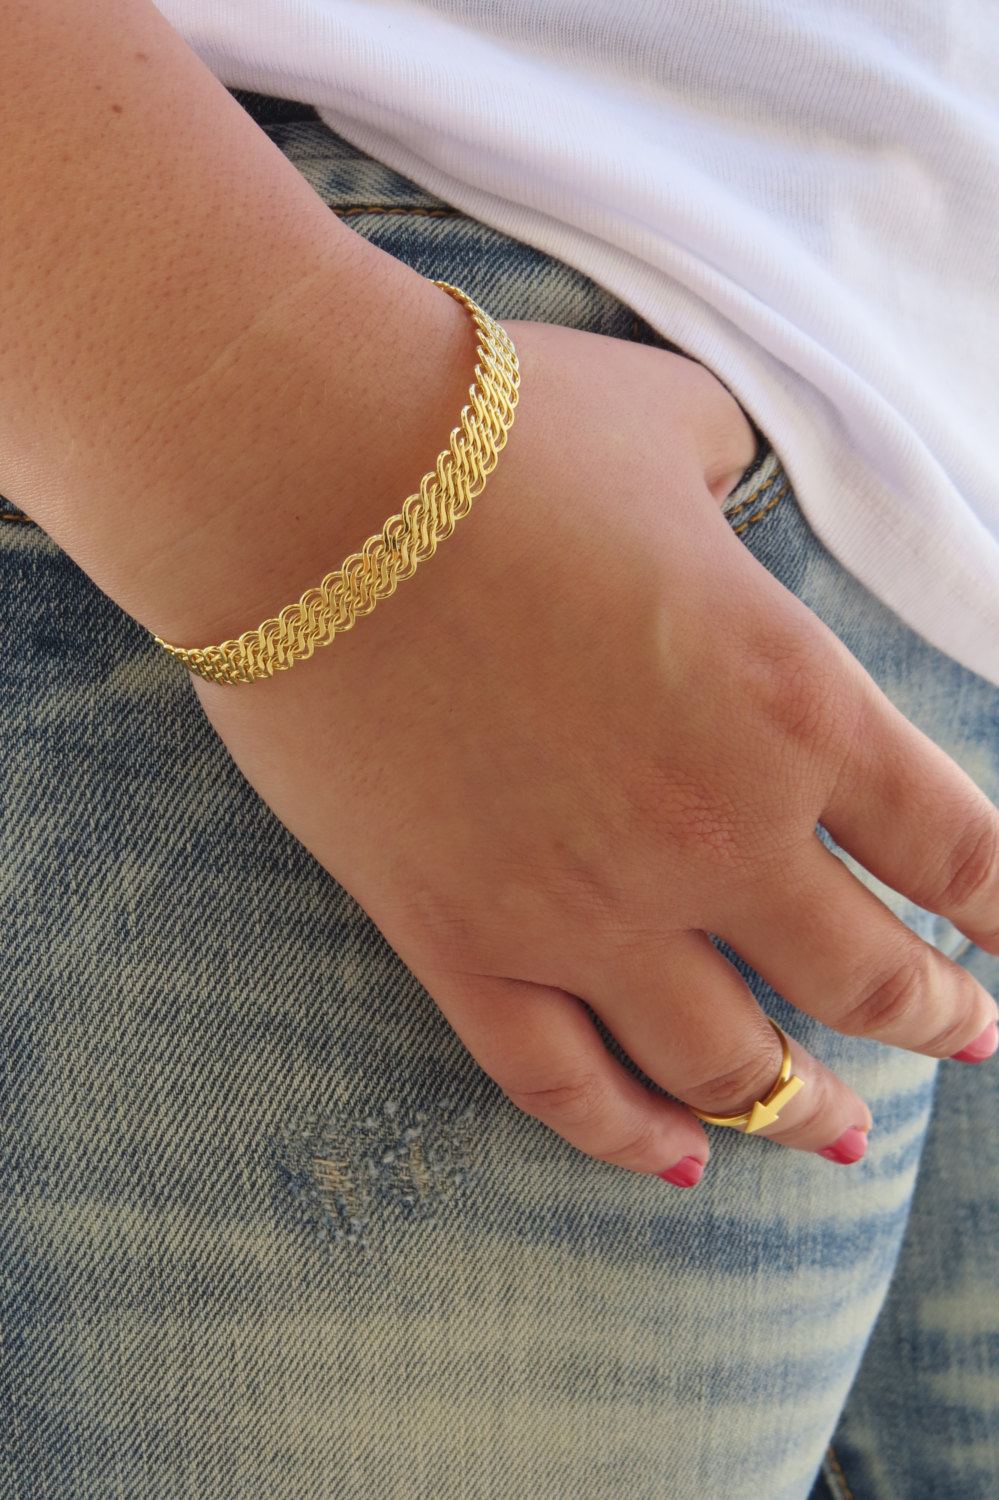 Gold Bracelet ,gold Bangle, Gold Cuff Bracelet, Bangle Bracelet, Stacking Bangle, Gold Filigree Bracelet, Bridal Bracelet, Band Bracelet